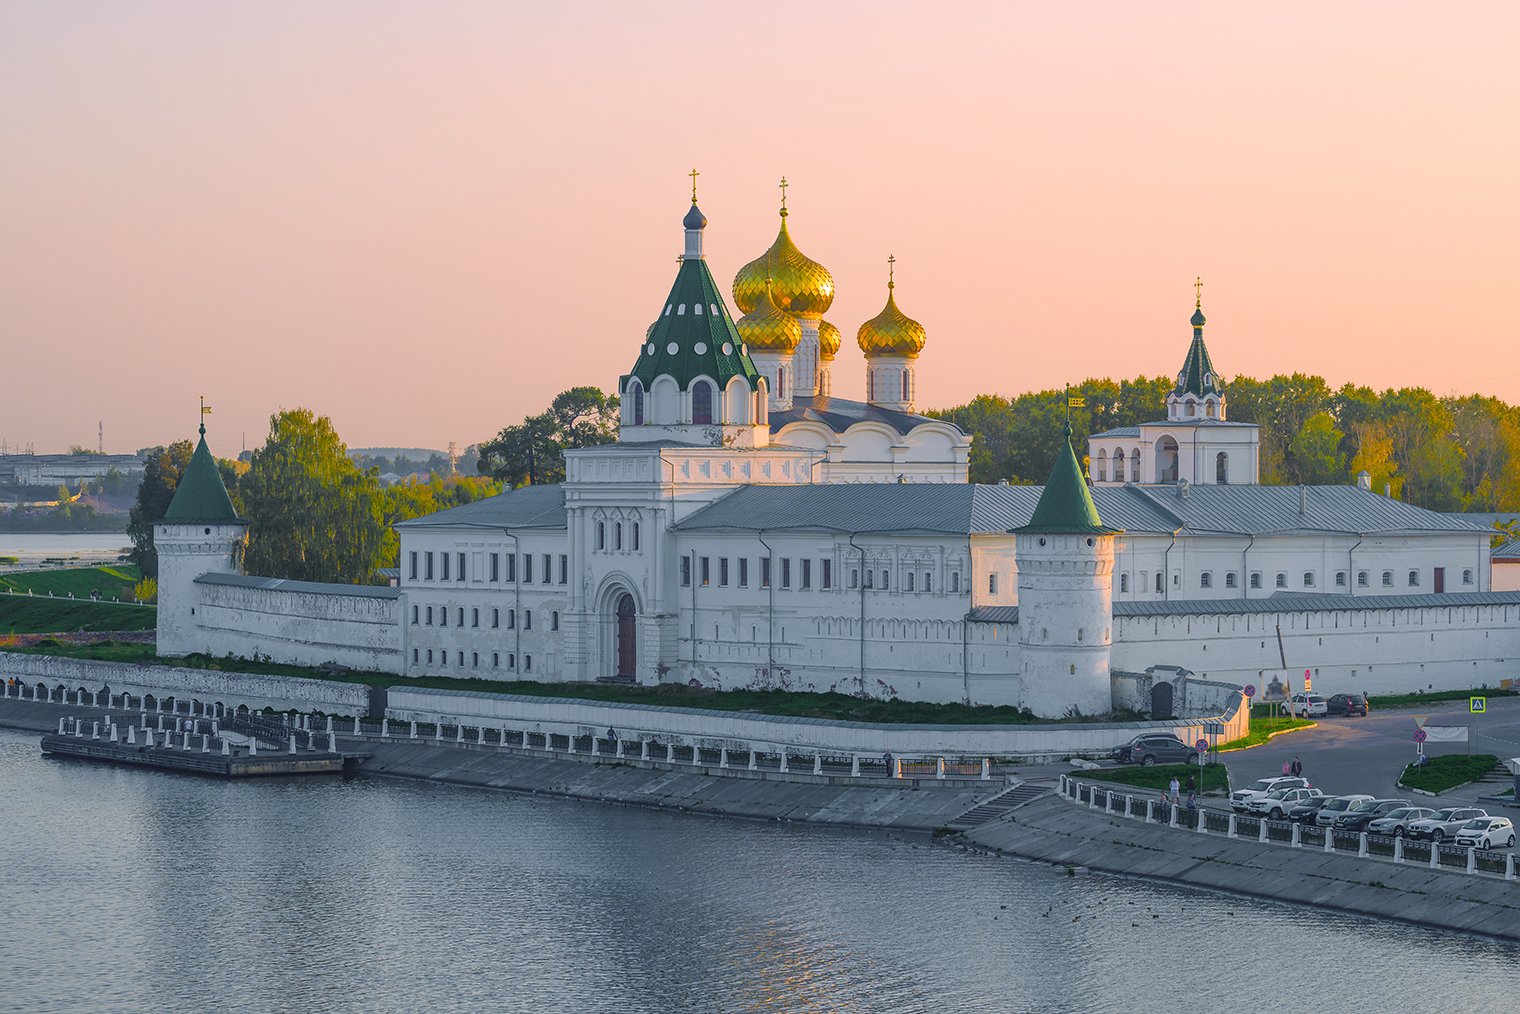 С воды Свято-Троицкий Ипатьевский монастырь выглядит особенно красиво. Фотография: Karasev Viktor / Shutterstock / FOTODOM